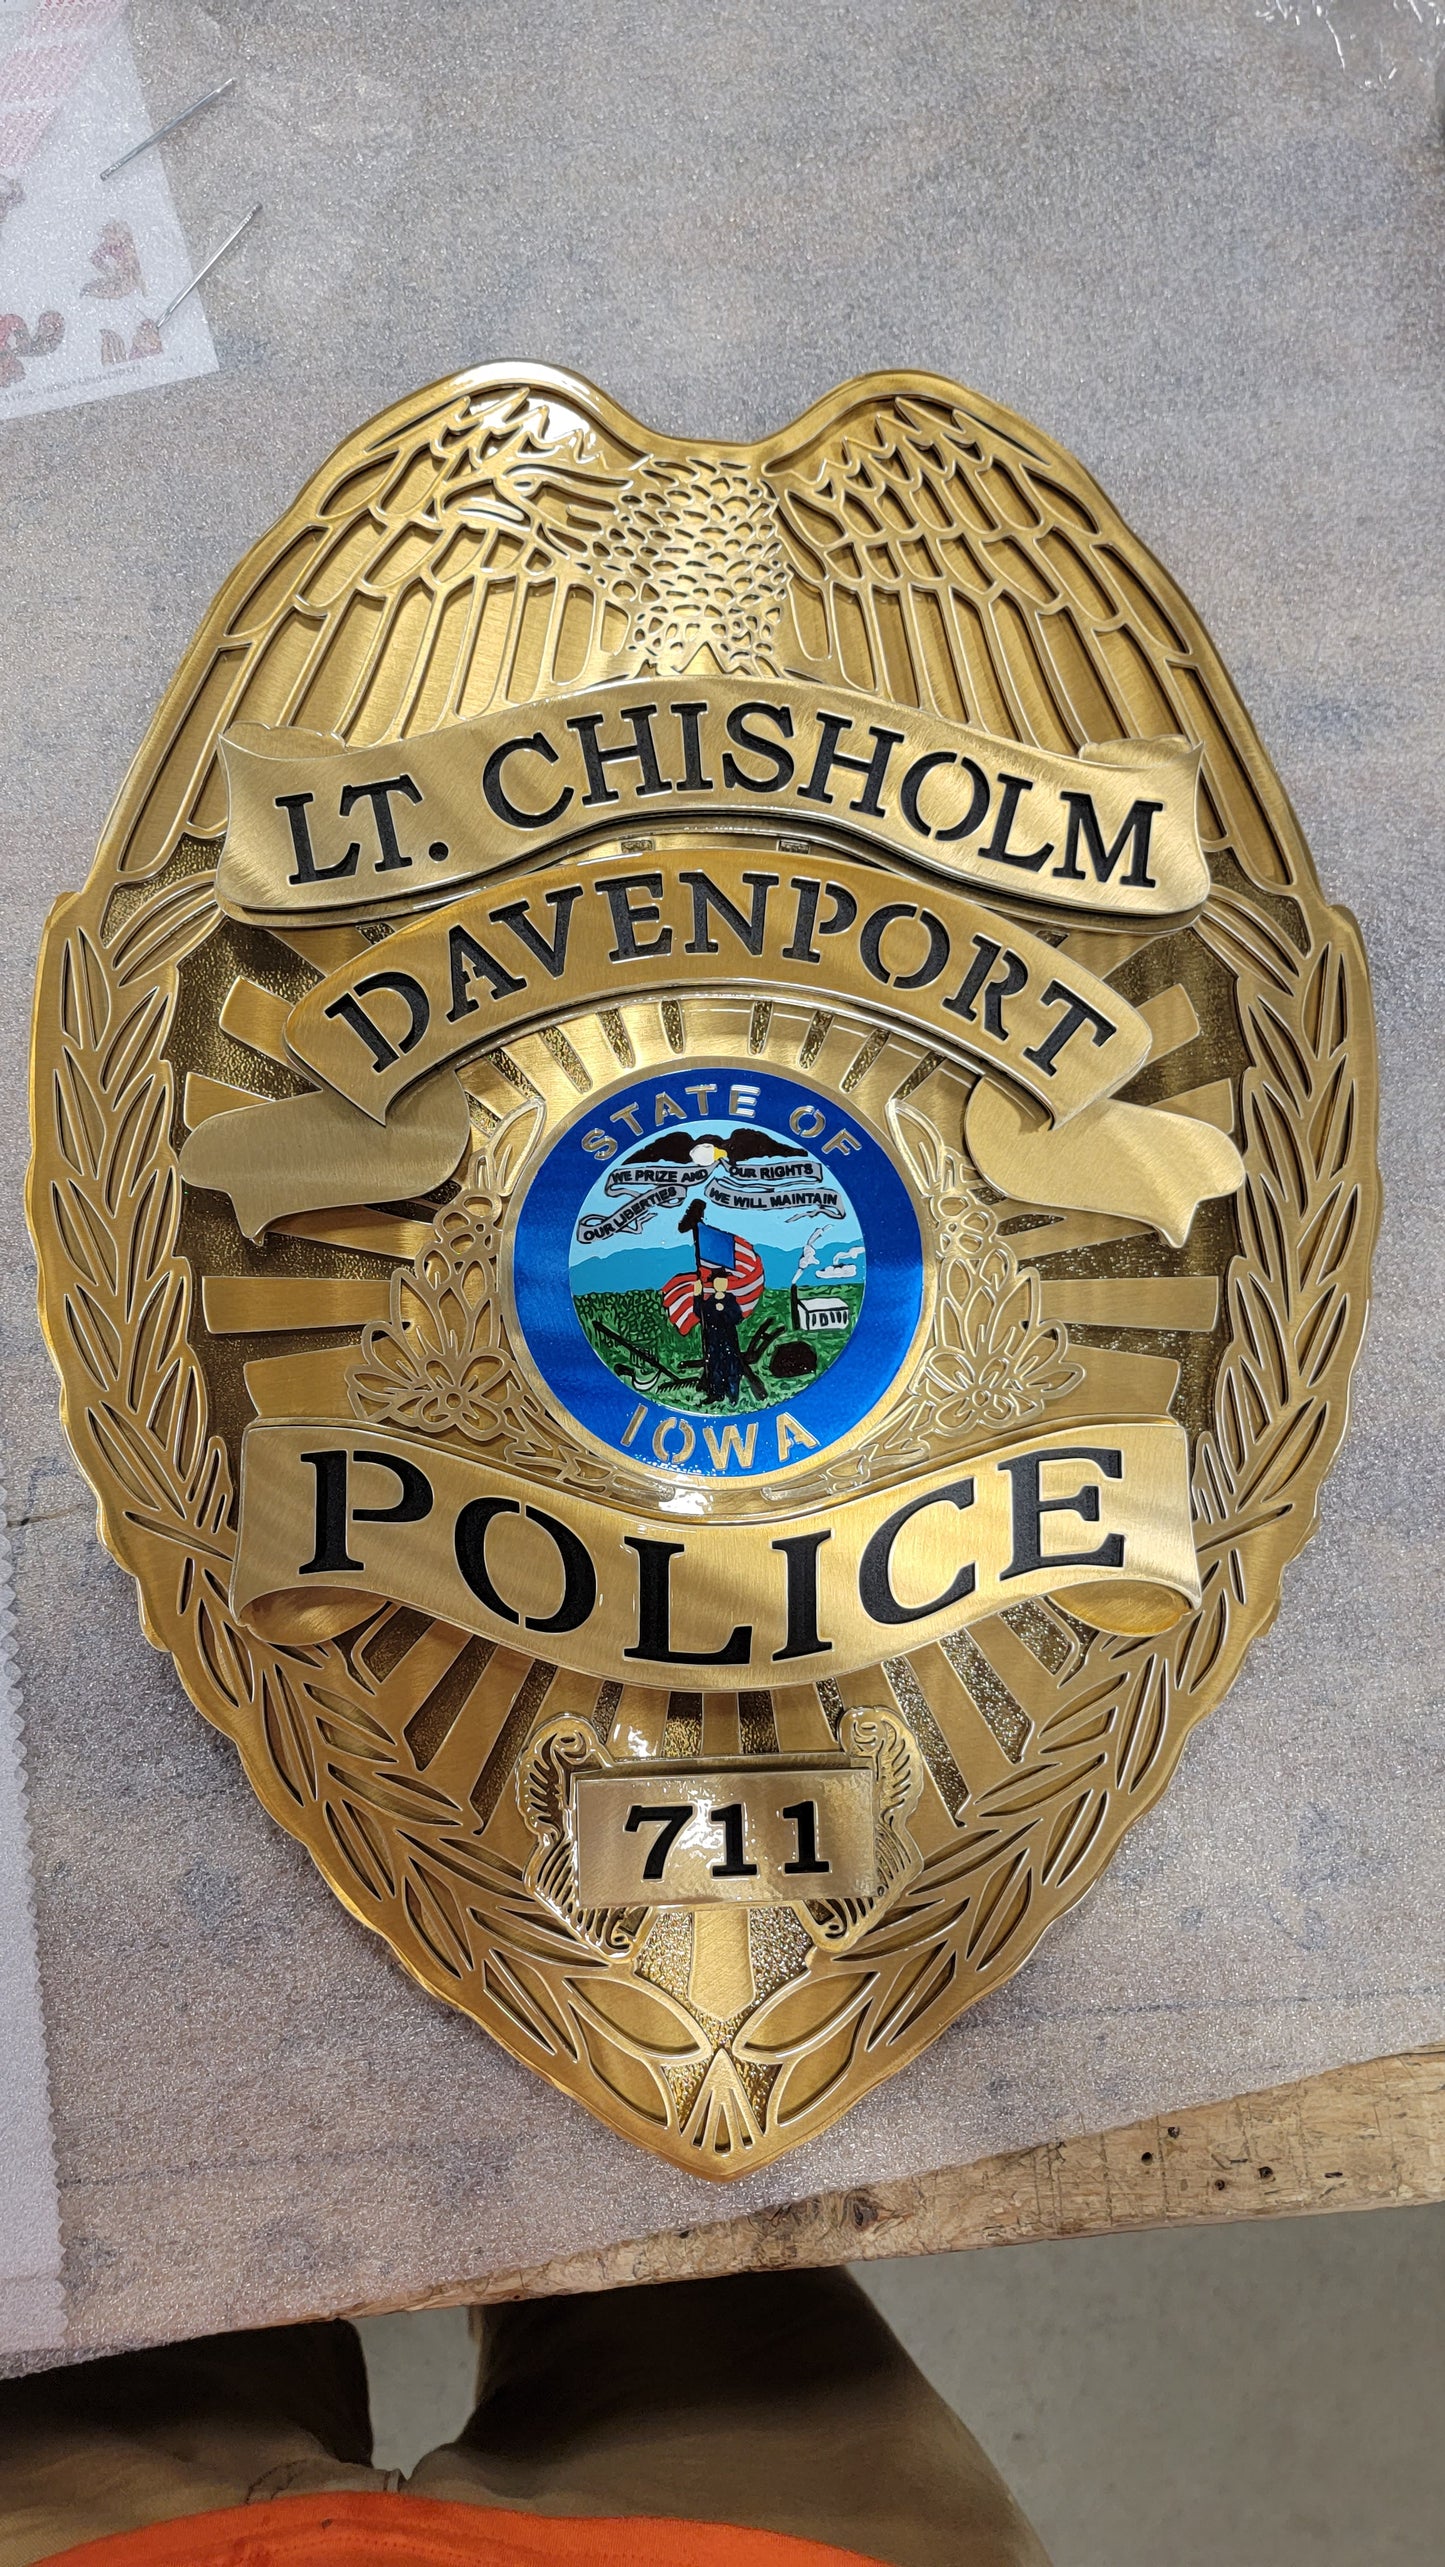 LT. Chisholm Davenport Police